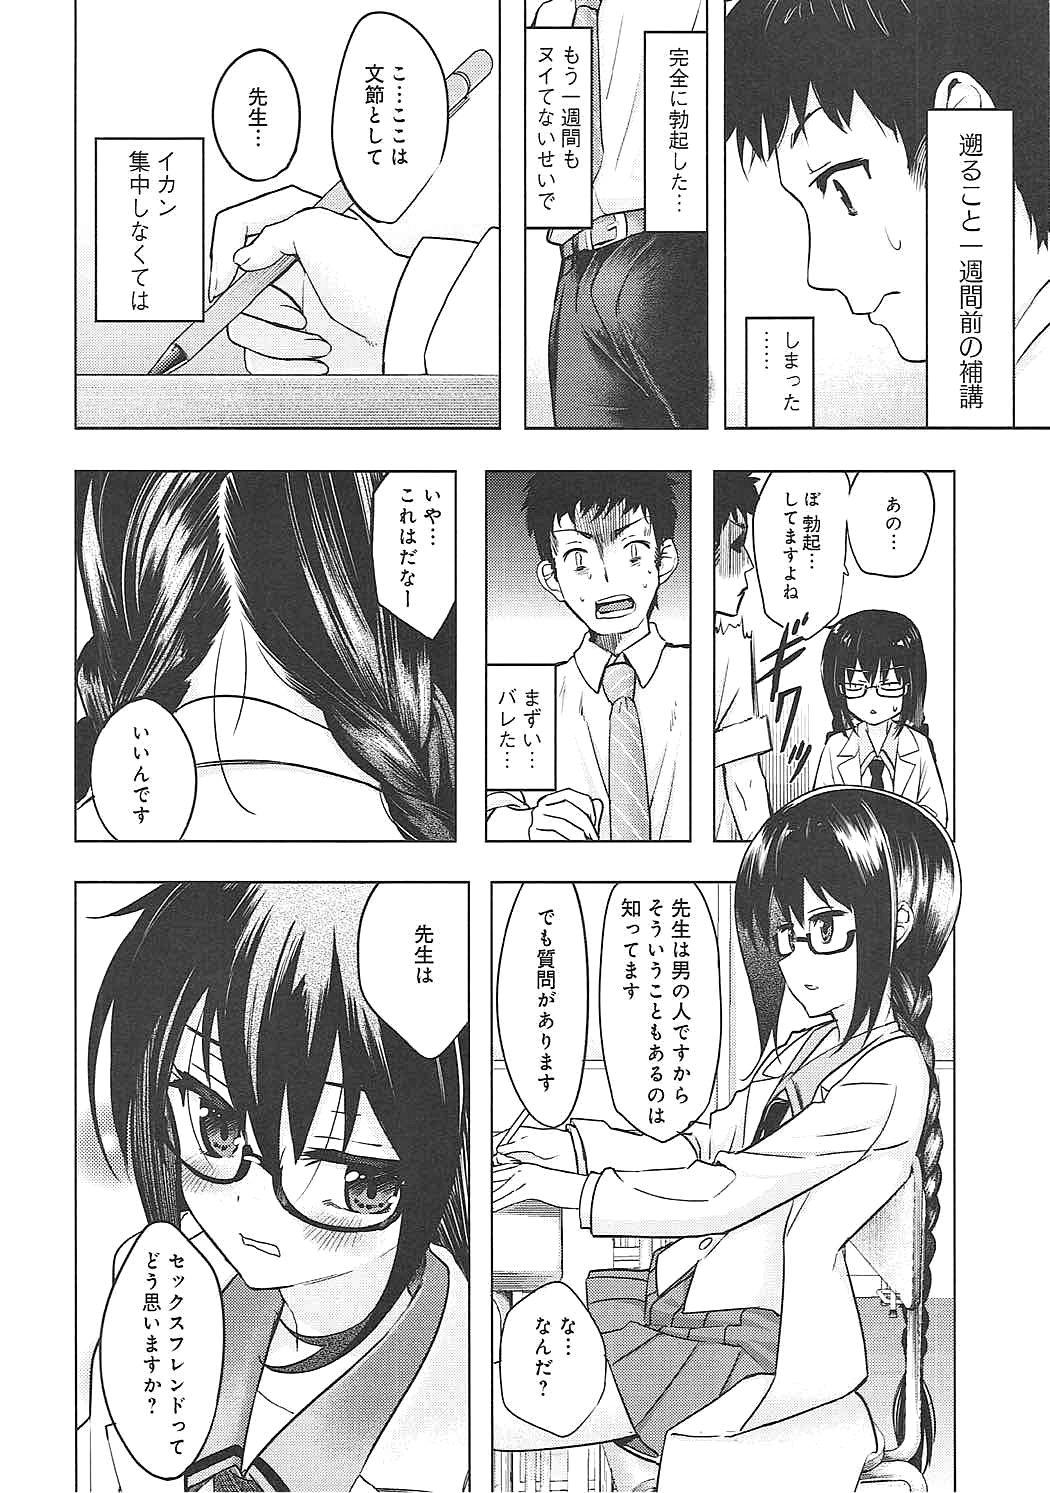 Teen Hardcore Watashi wa Sensei no Shikotomo desu! - Omaera zenin mendokusai Monster Dick - Page 5